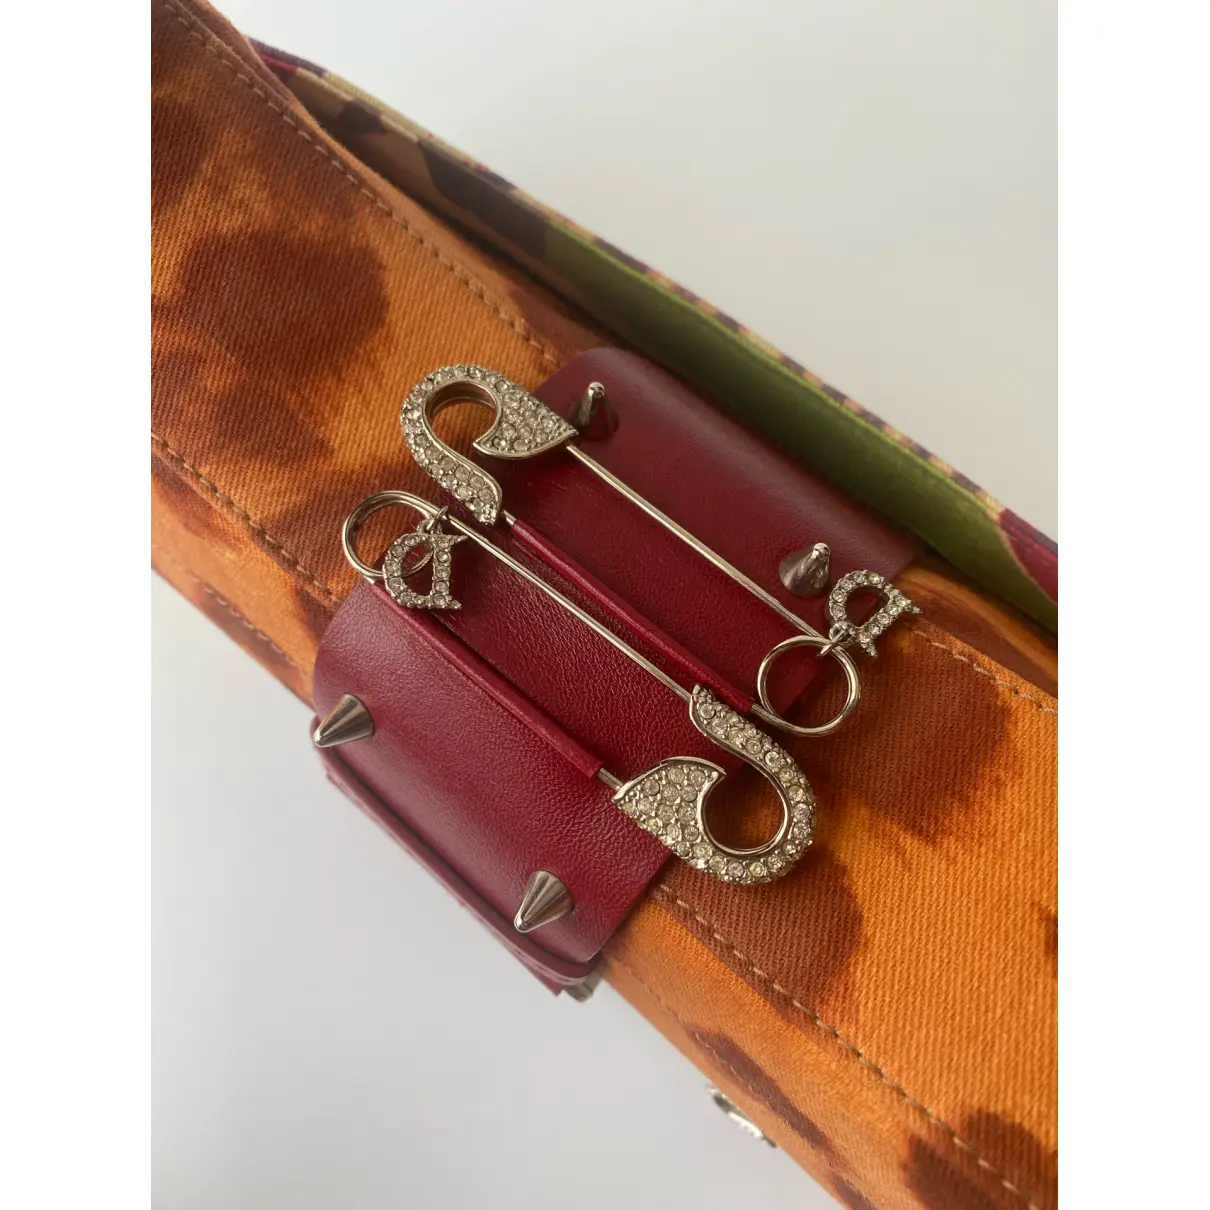 Buy Dior Columbus cloth handbag online - Vintage